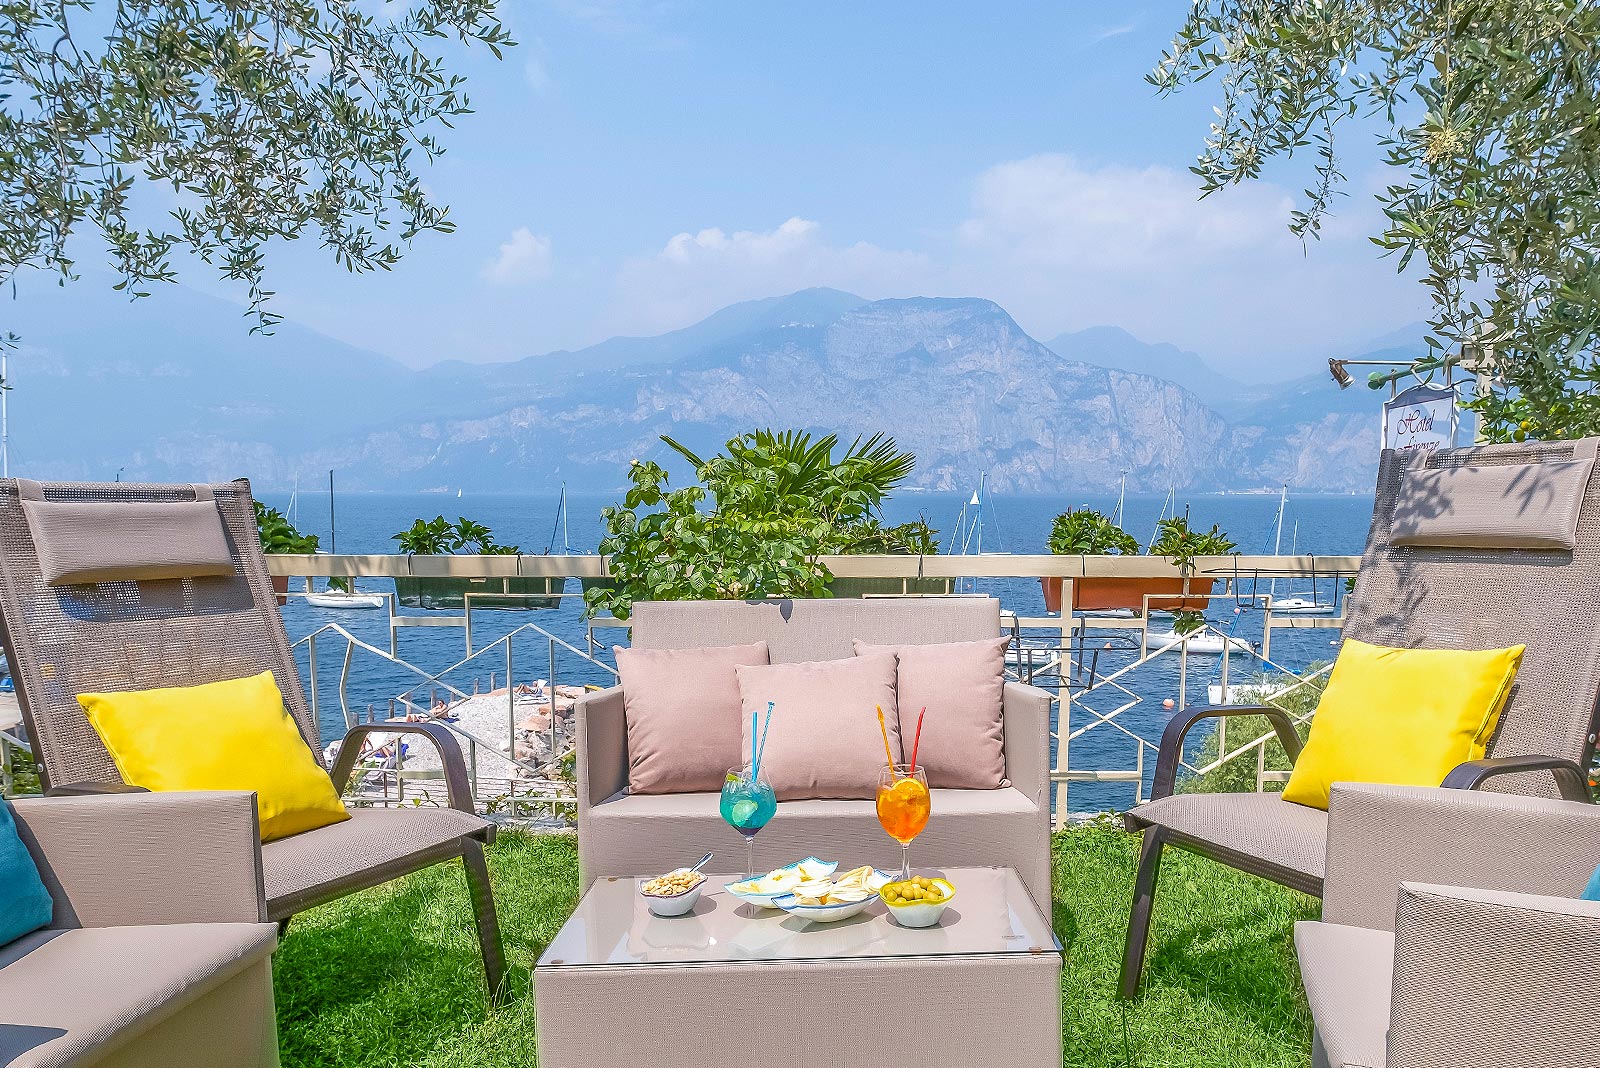 Garten mit Liegen und Tische 3 Sterne Hotel Firenze am Gardasee